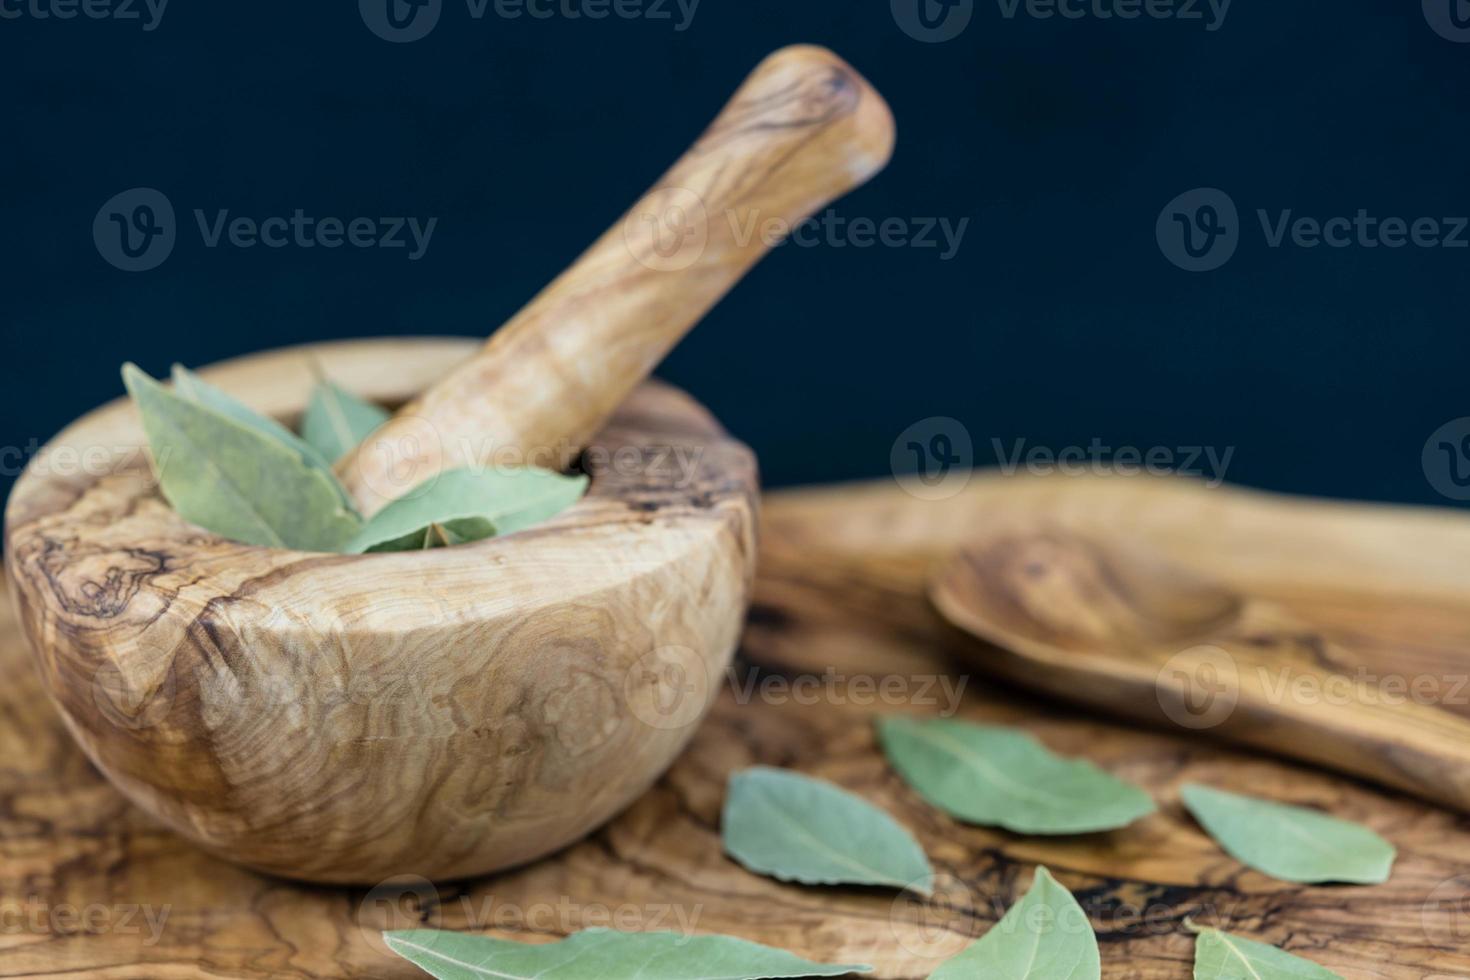 hojas de laurel y bayas de enebro en madera de olivo foto